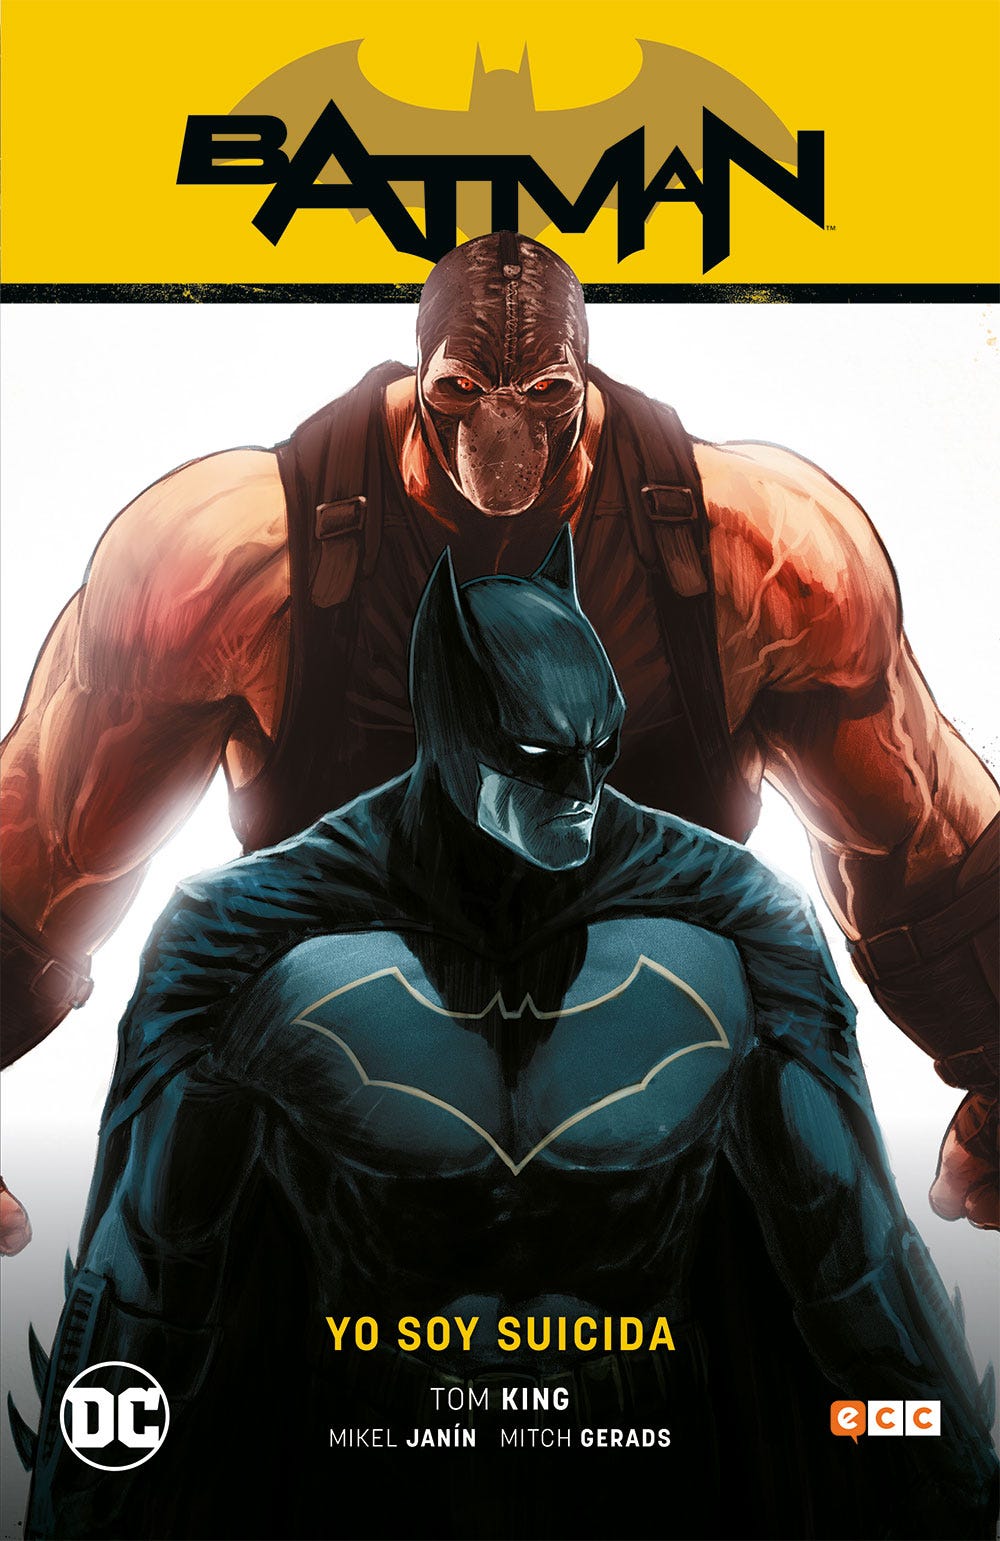 Los 10 mejores cómics de superhéroes de 2019 | by Ignacio Pillonetto |  Papel en Blanco